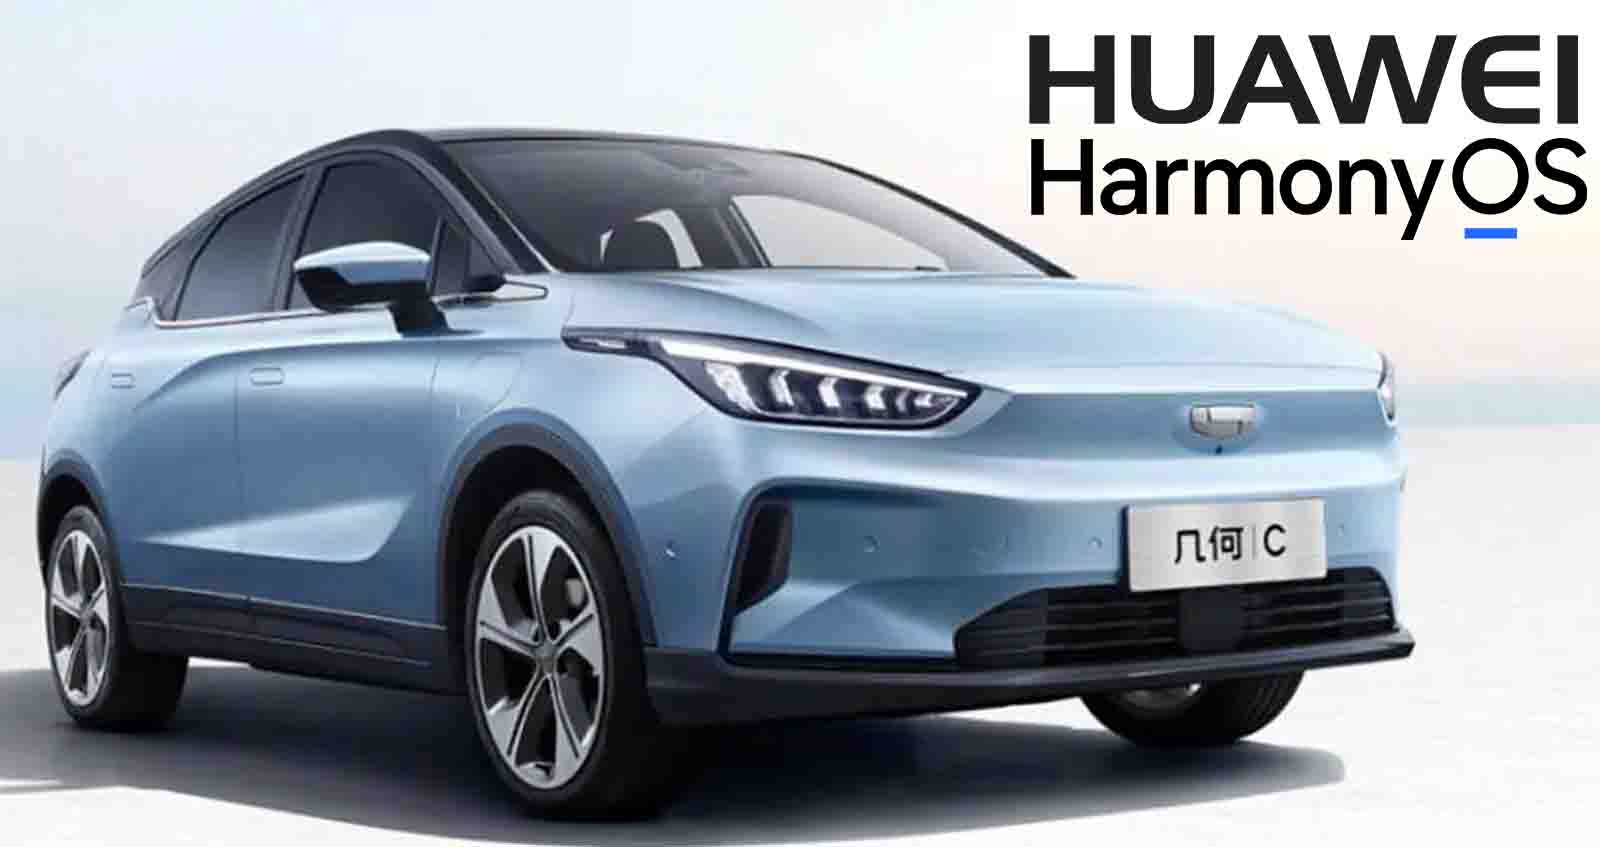 Geely Auto จะเริ่มใช้ Huawei HarmonyOS สำหรับรถยนต์เกือบทุกรุ่น